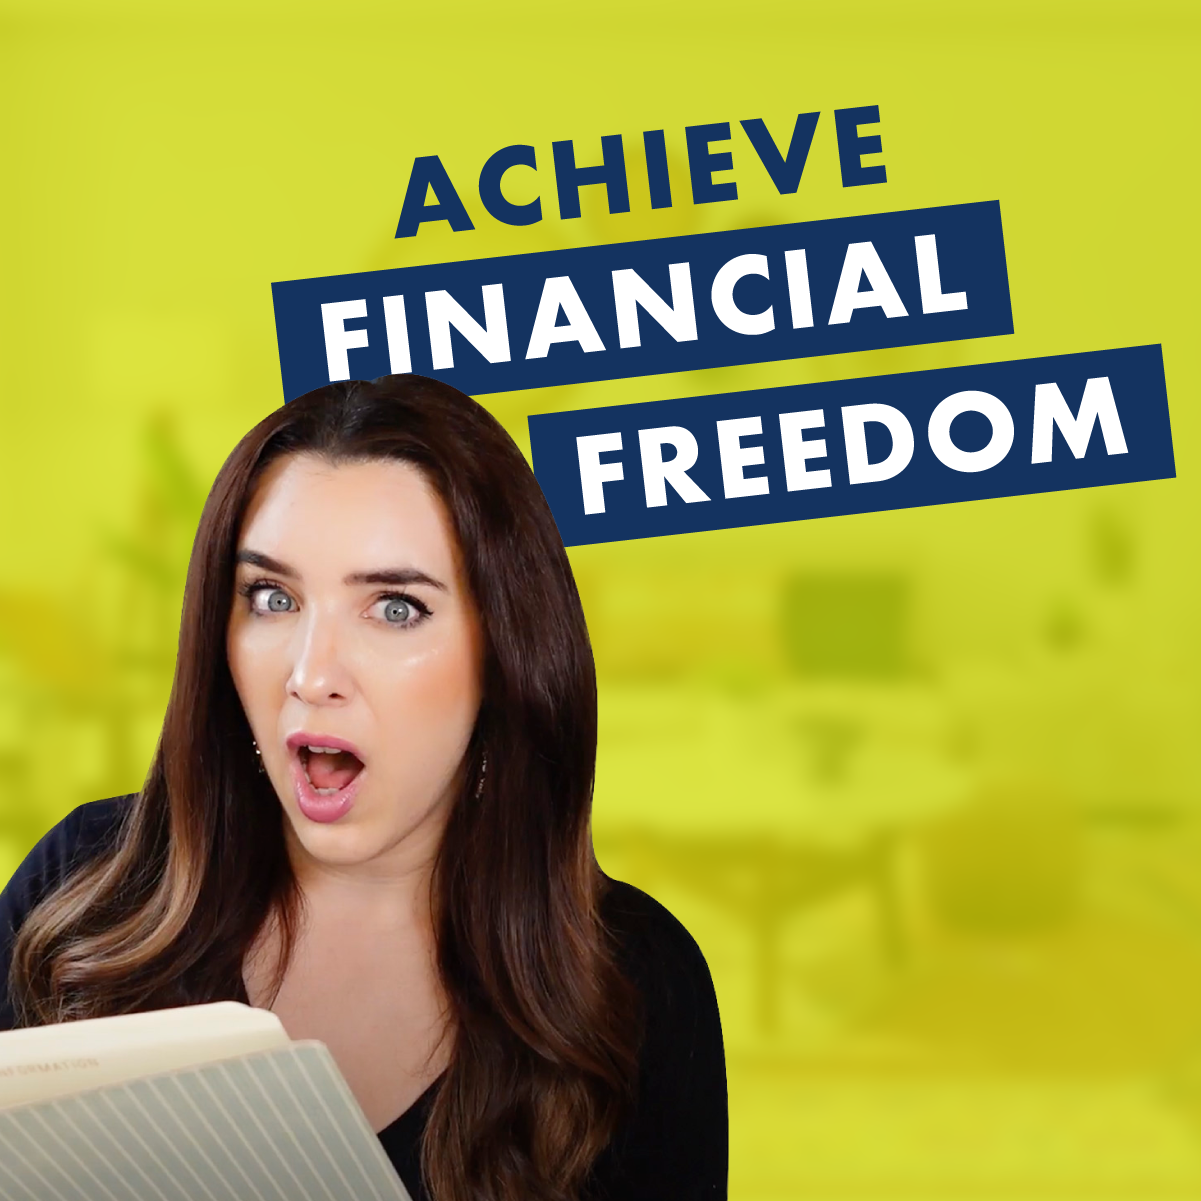 Achieve financial freedom